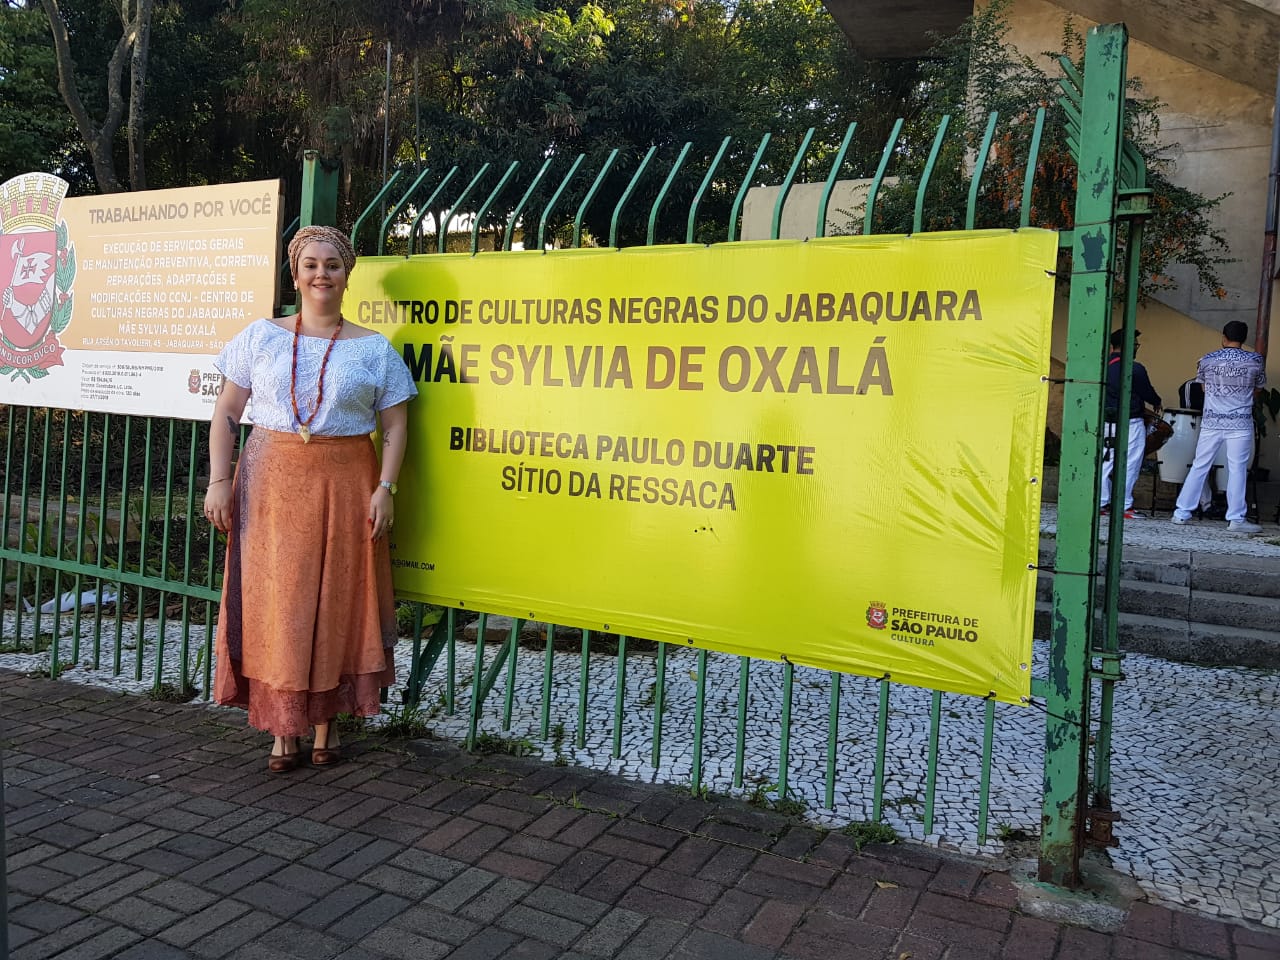 DIA DE ÁFRICA 2019 no Centro Municipal de Culturas Negras do Jabaquara – Mãe Sylvia de Oxalá